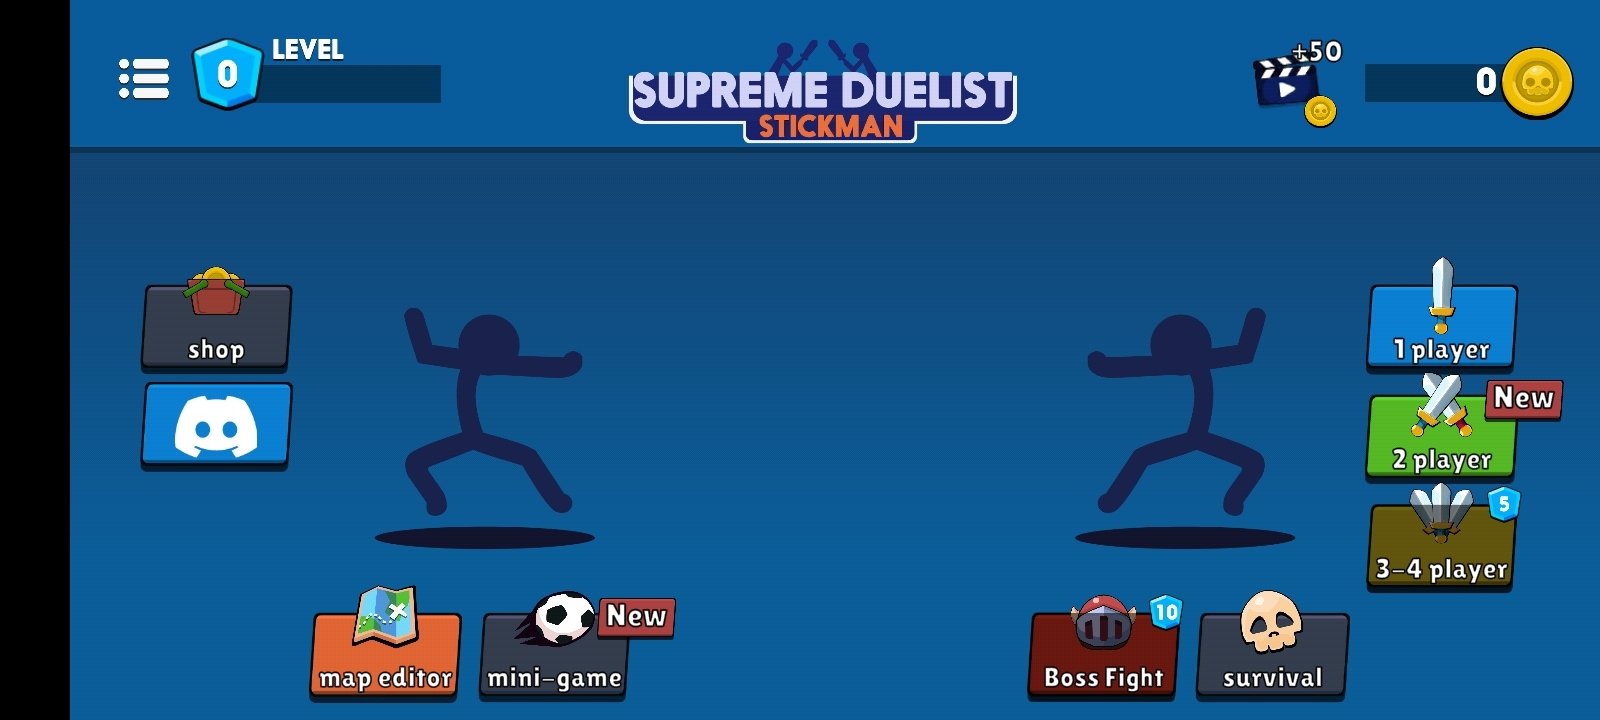 supreme duelist stickman mod apk